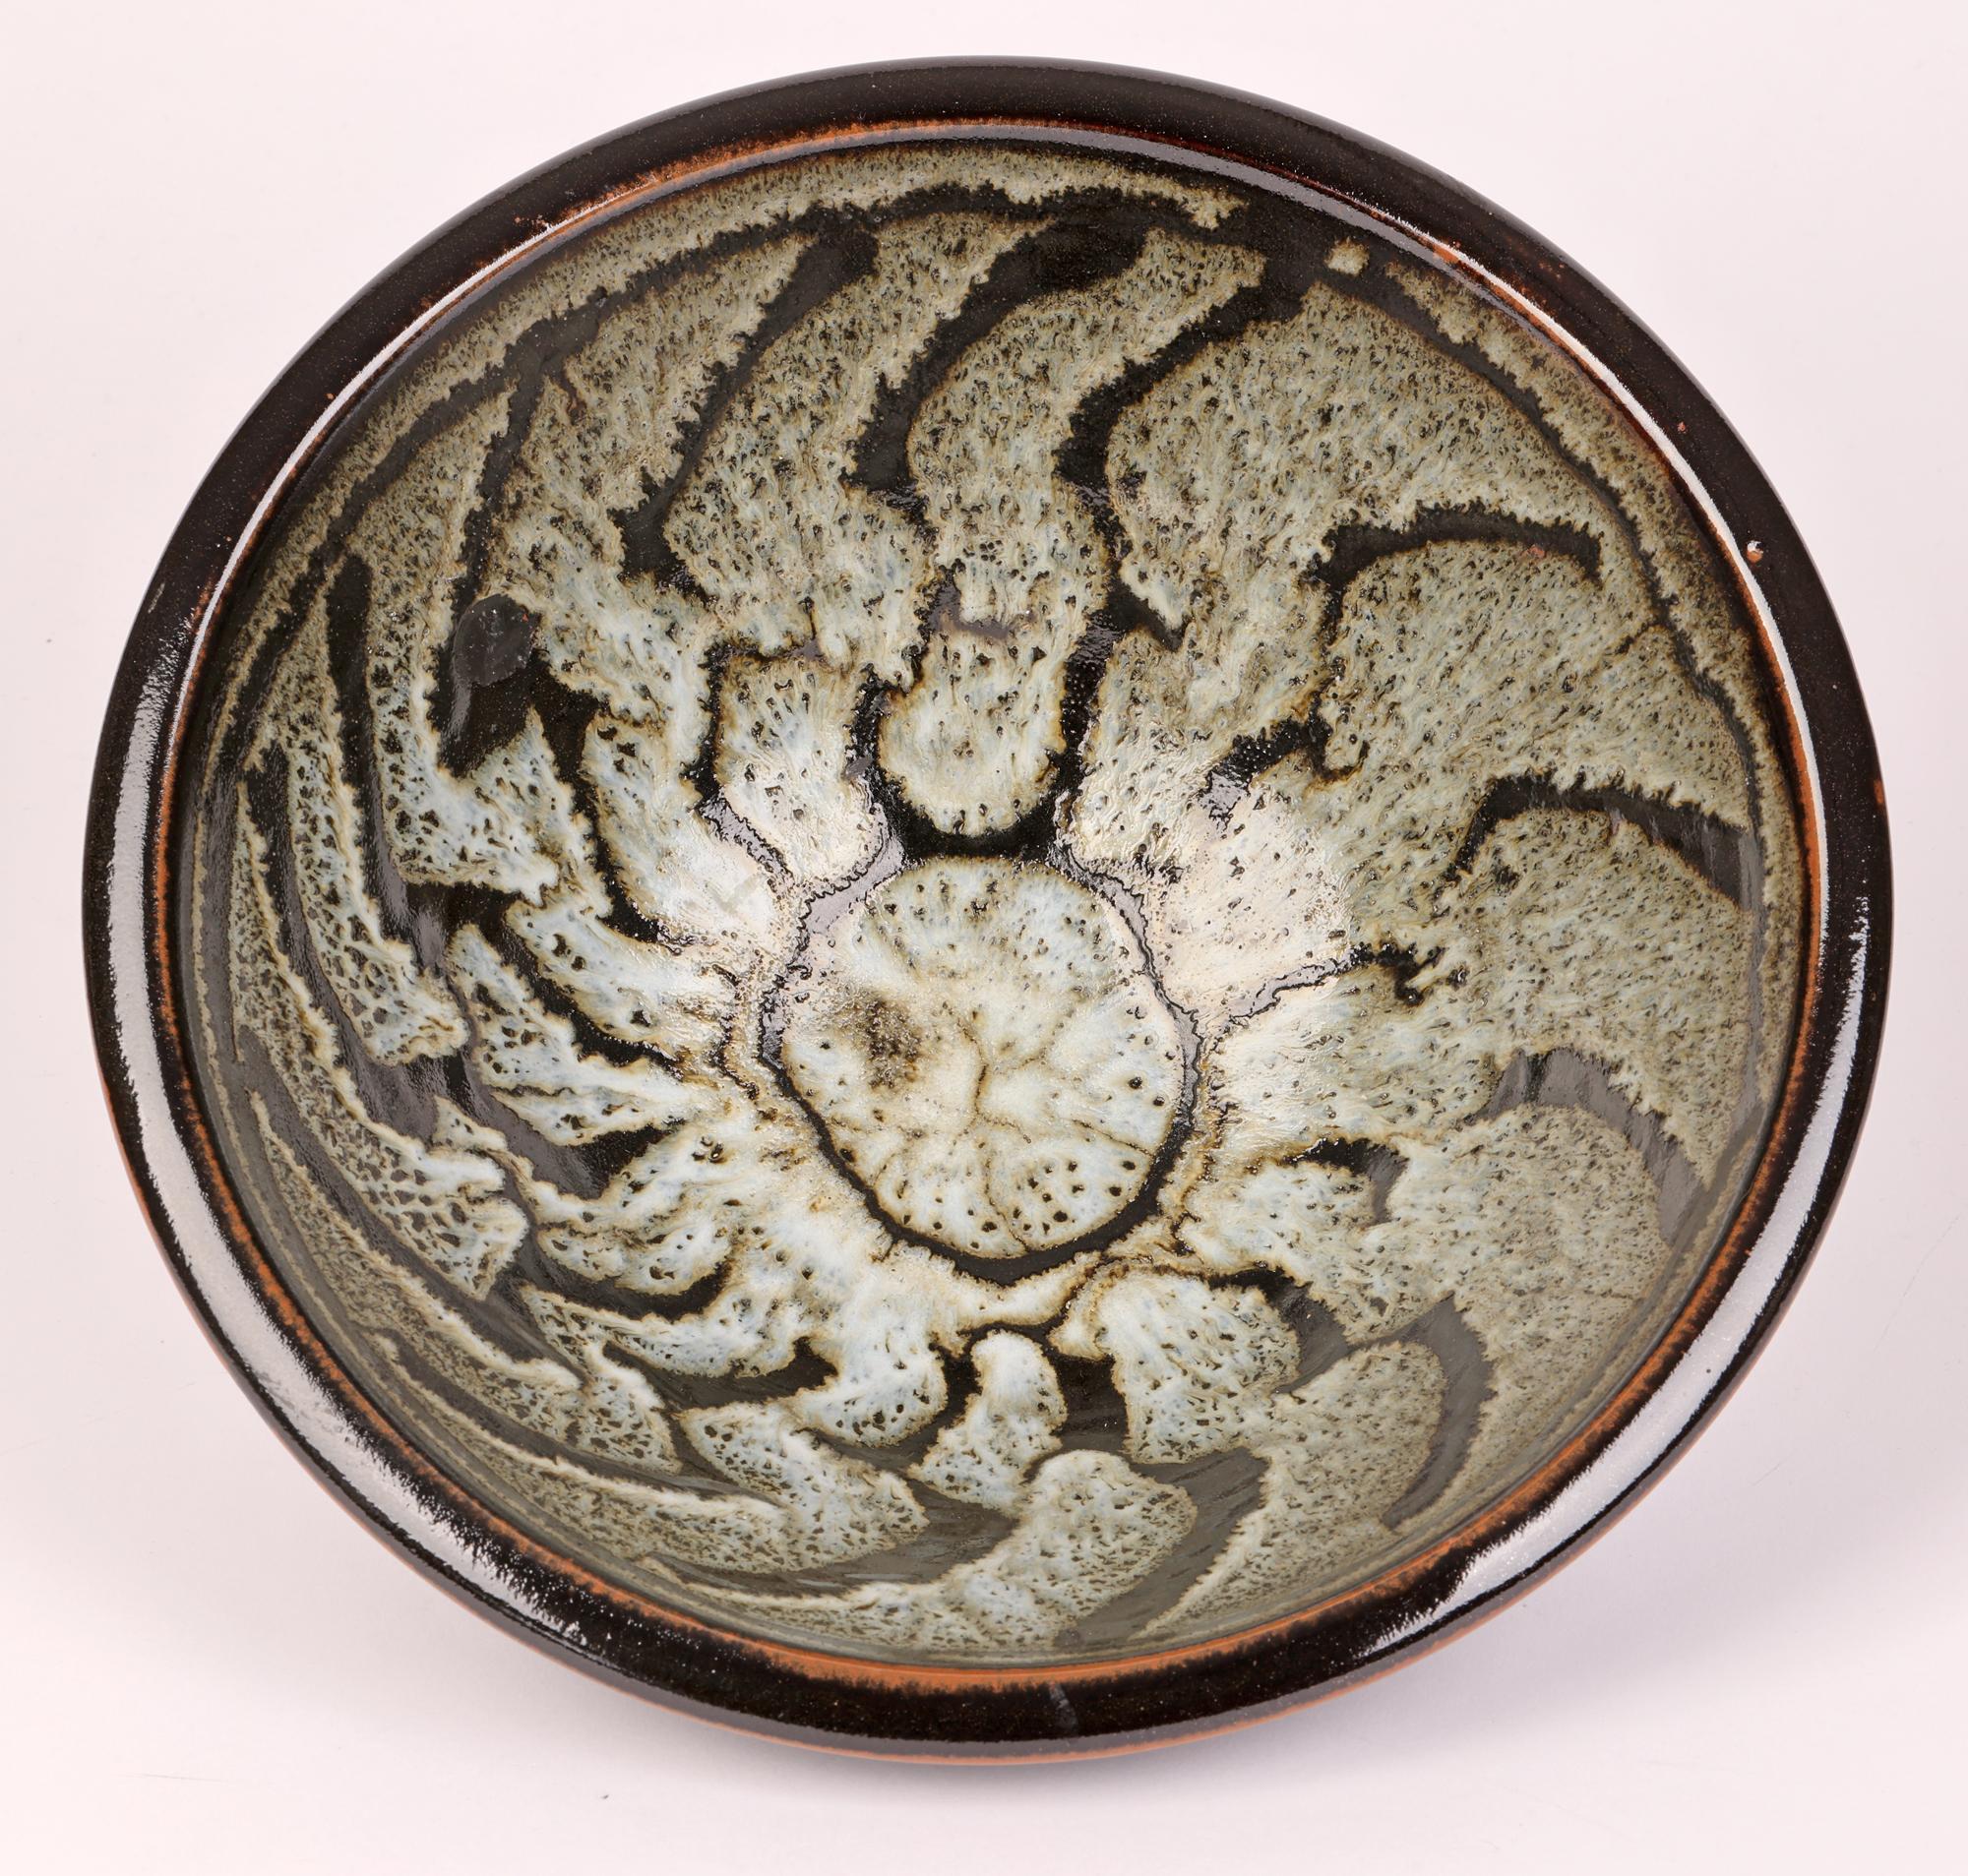 Stoneware David Leach Tenmoku & Dolomite Glazed Wax Resist Studio Pottery Bowl